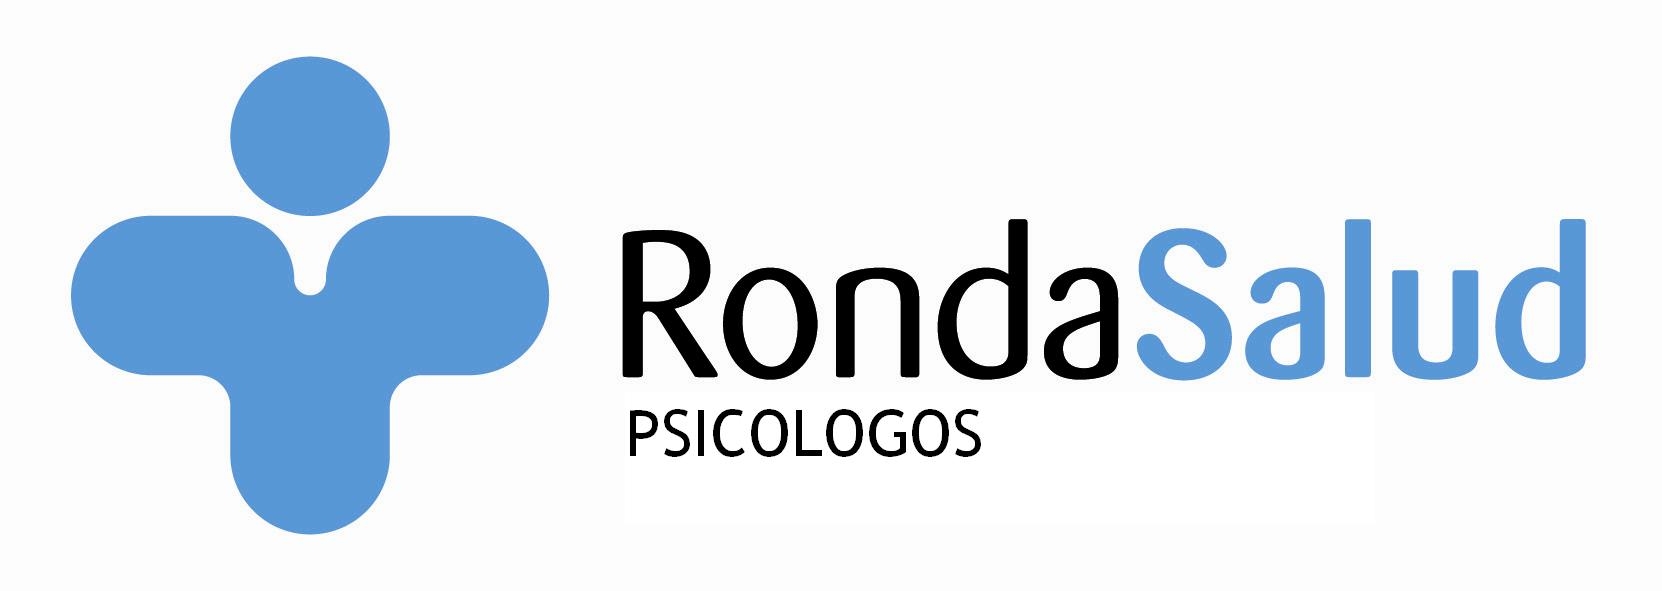 Logotipo de la clínica Rondasalud Psicólogos Almería